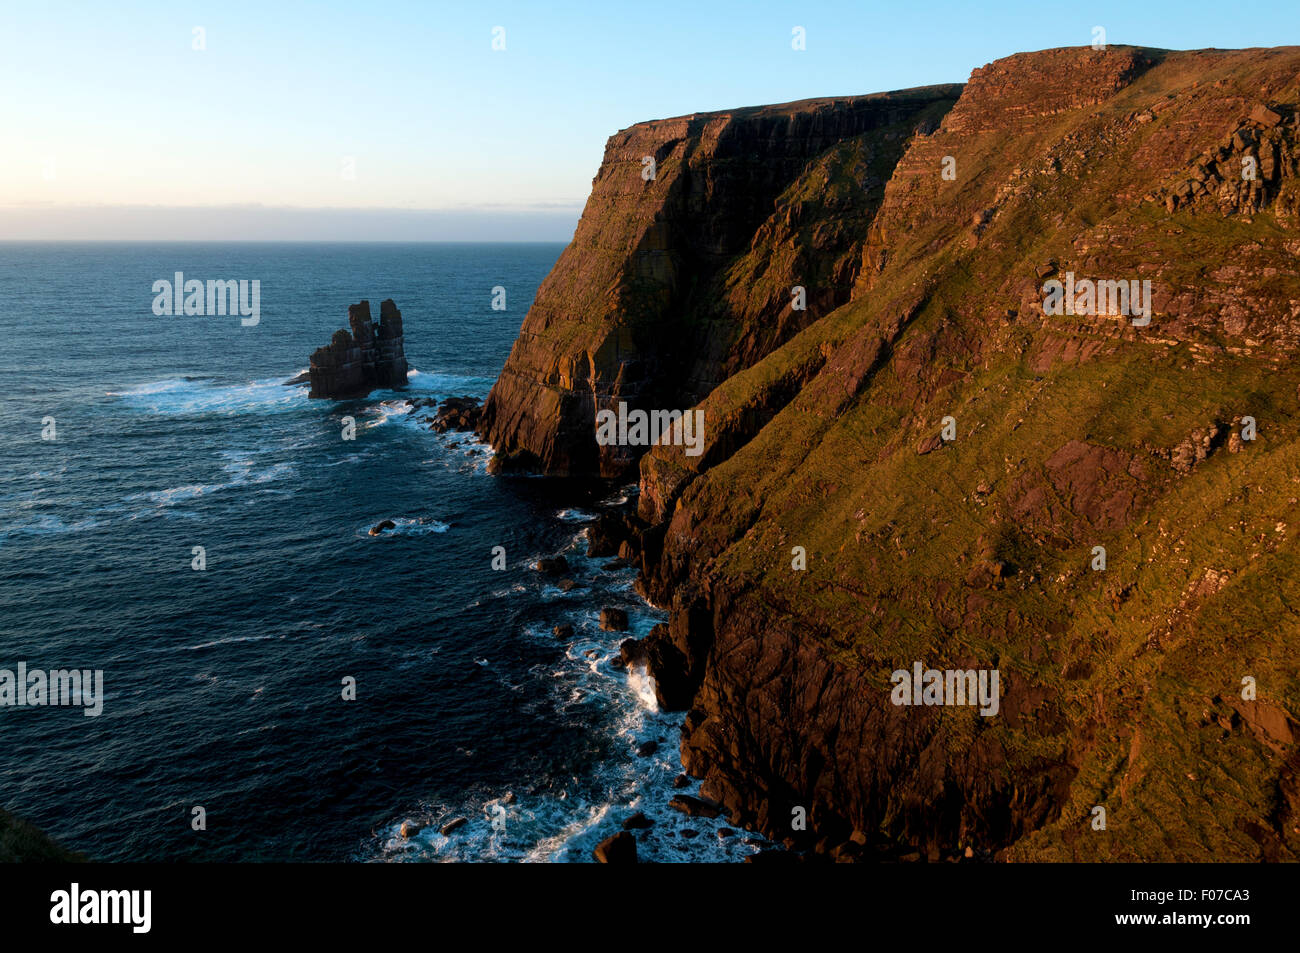 Stapeln Sie Klippen östlich von Kearvaig Bay und Stapel Clò Kearvaig Meer, an der Nordküste östlich von Cape Wrath, Sutherland, Schottland, UK Stockfoto